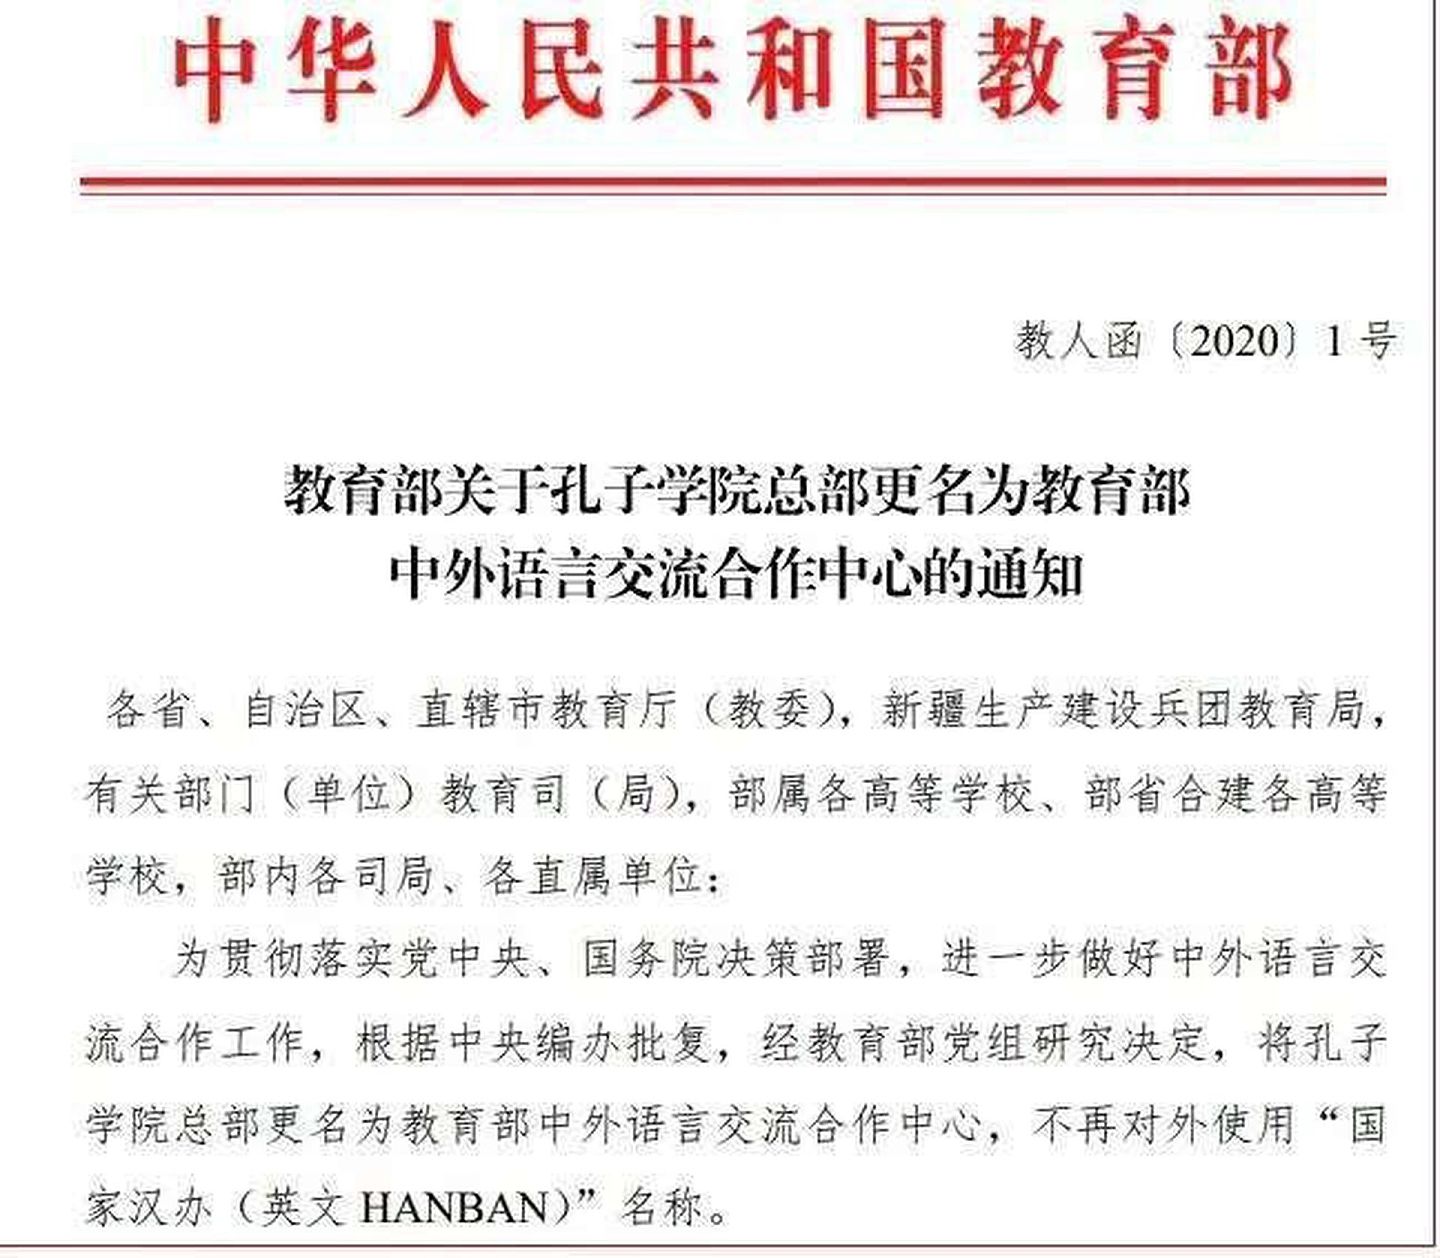 网络流传中国教育部发布的孔子学院总部更名通知。（微博@财小僧）